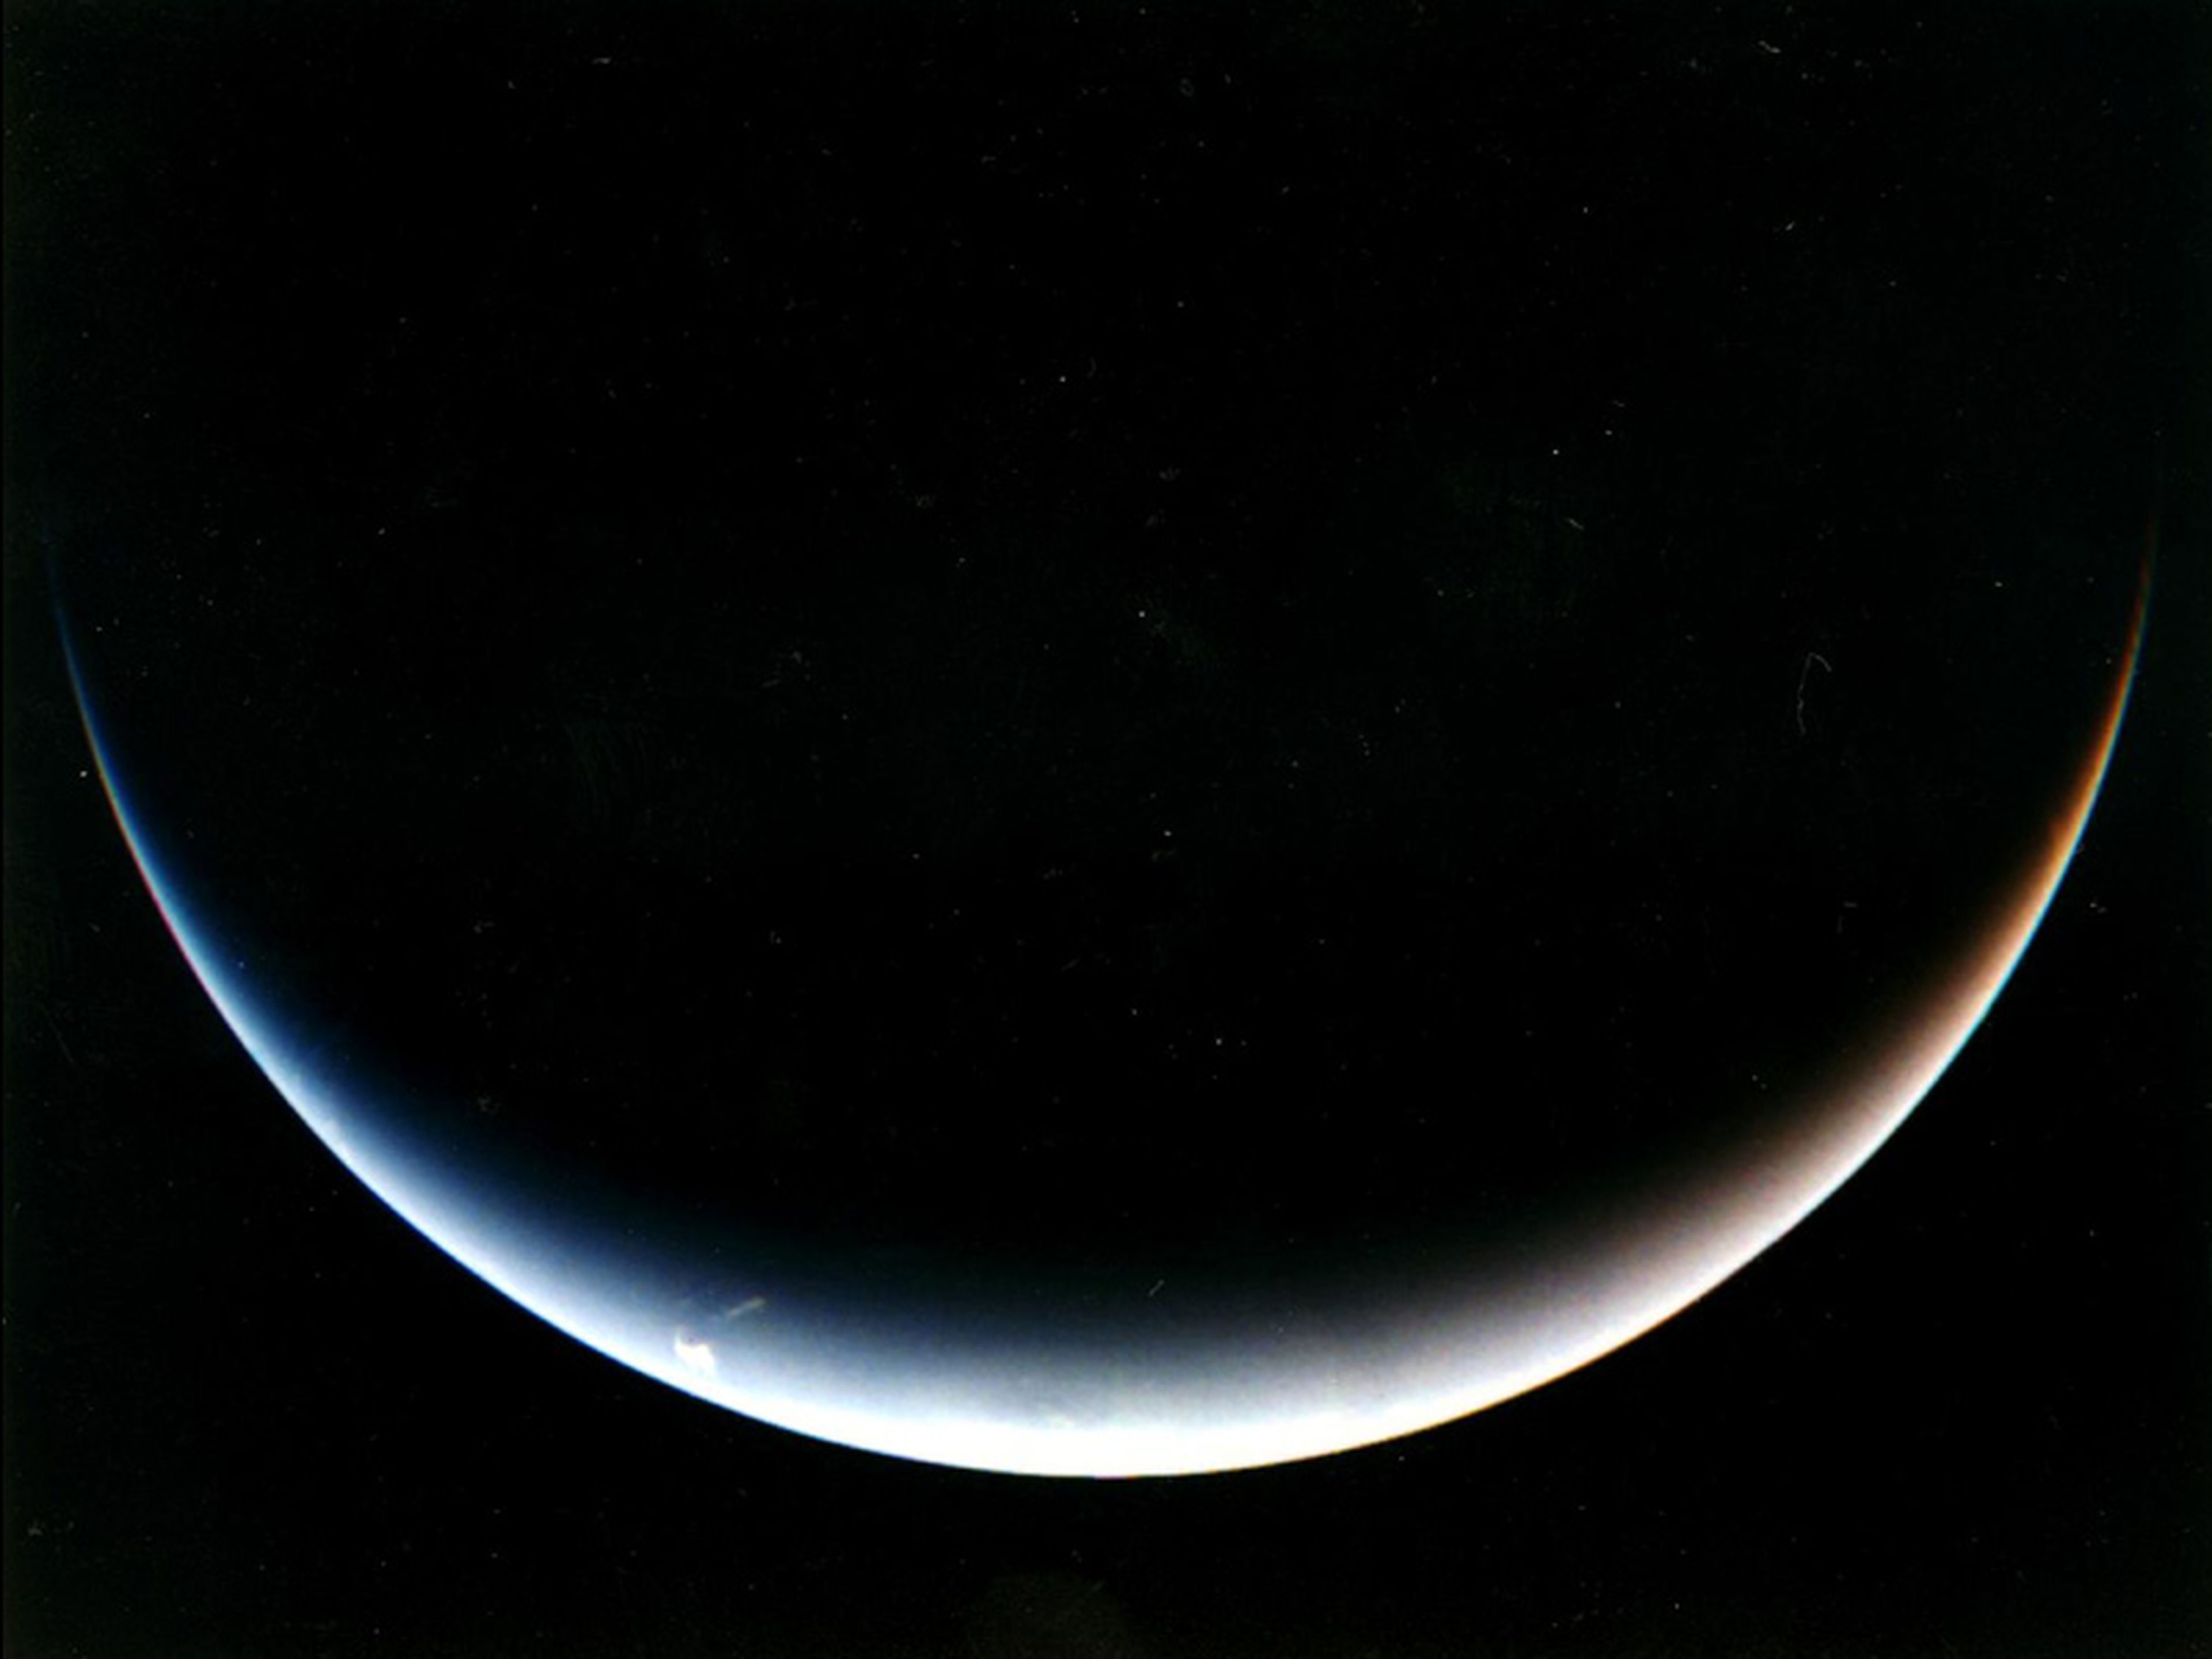 Imagen tomada por la sonda Voyager 2, de la NASA, del polo sur de Neptuno.